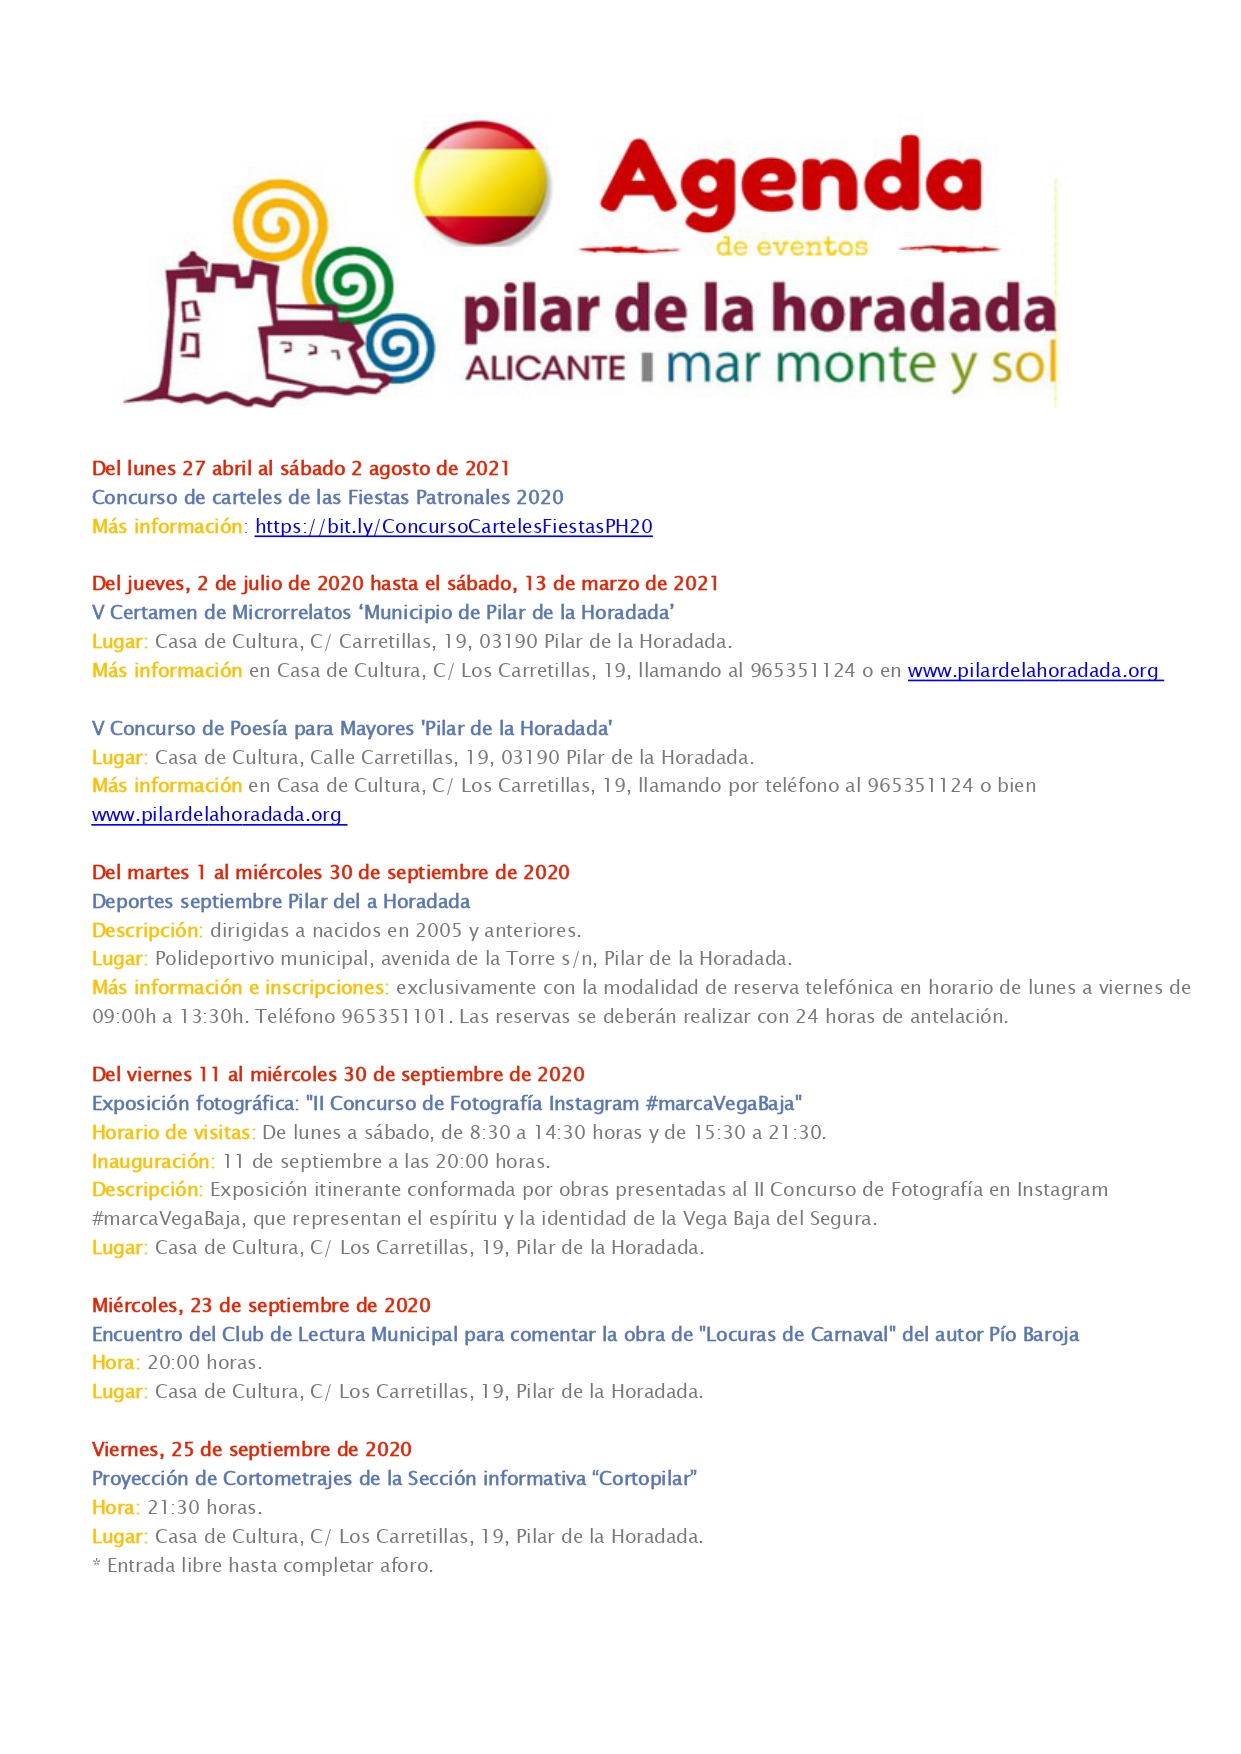 AGENDA_DE_EVENTOS_Pilar_de_la_Horadada_hasta_27_septiembre_page-0001.jpg